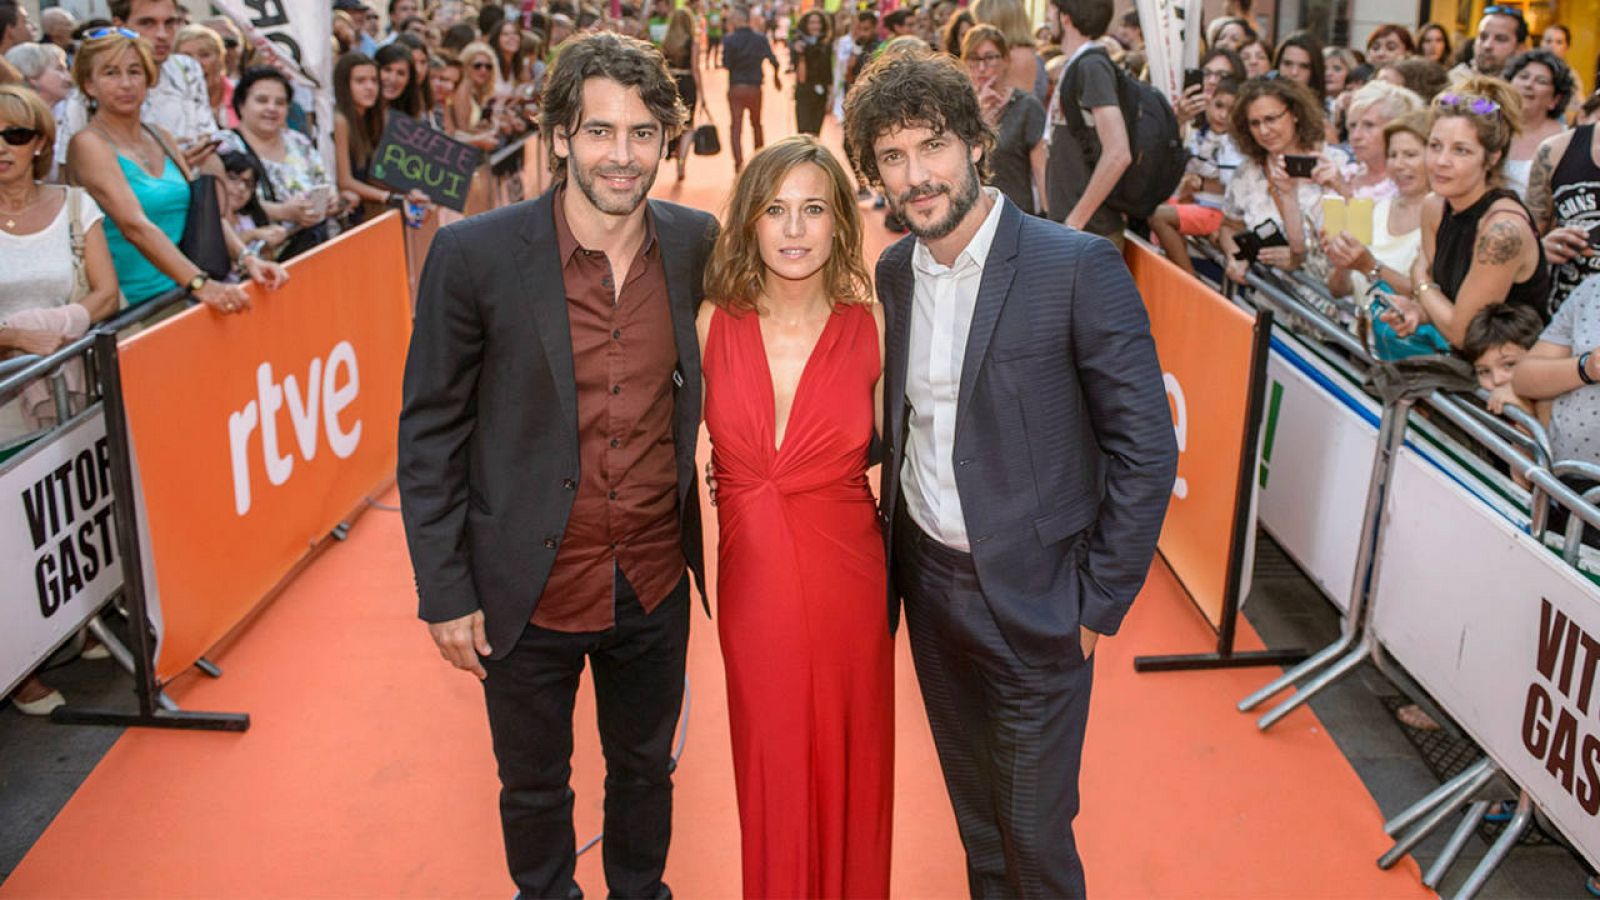  Eduardo Noriega, Marta Etura y Daniel Grao en la alfombra naranja de Vitoria